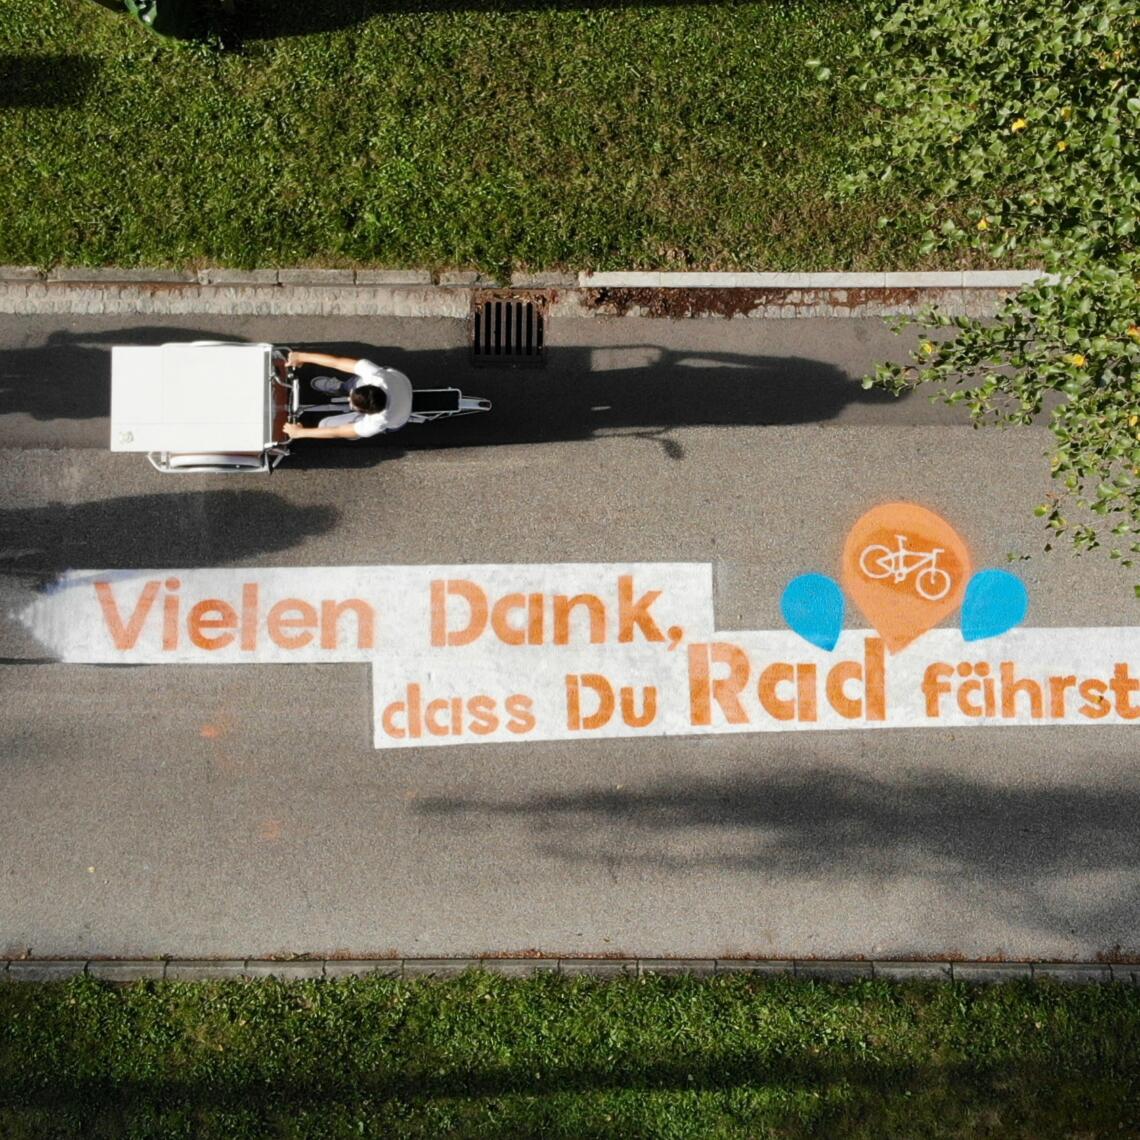 Schriftzug "Vielen Dank, dass du Rad fährst" am Traunradweg in Wels aus der Vogelperspektive mit 3 Radfahrer:innen